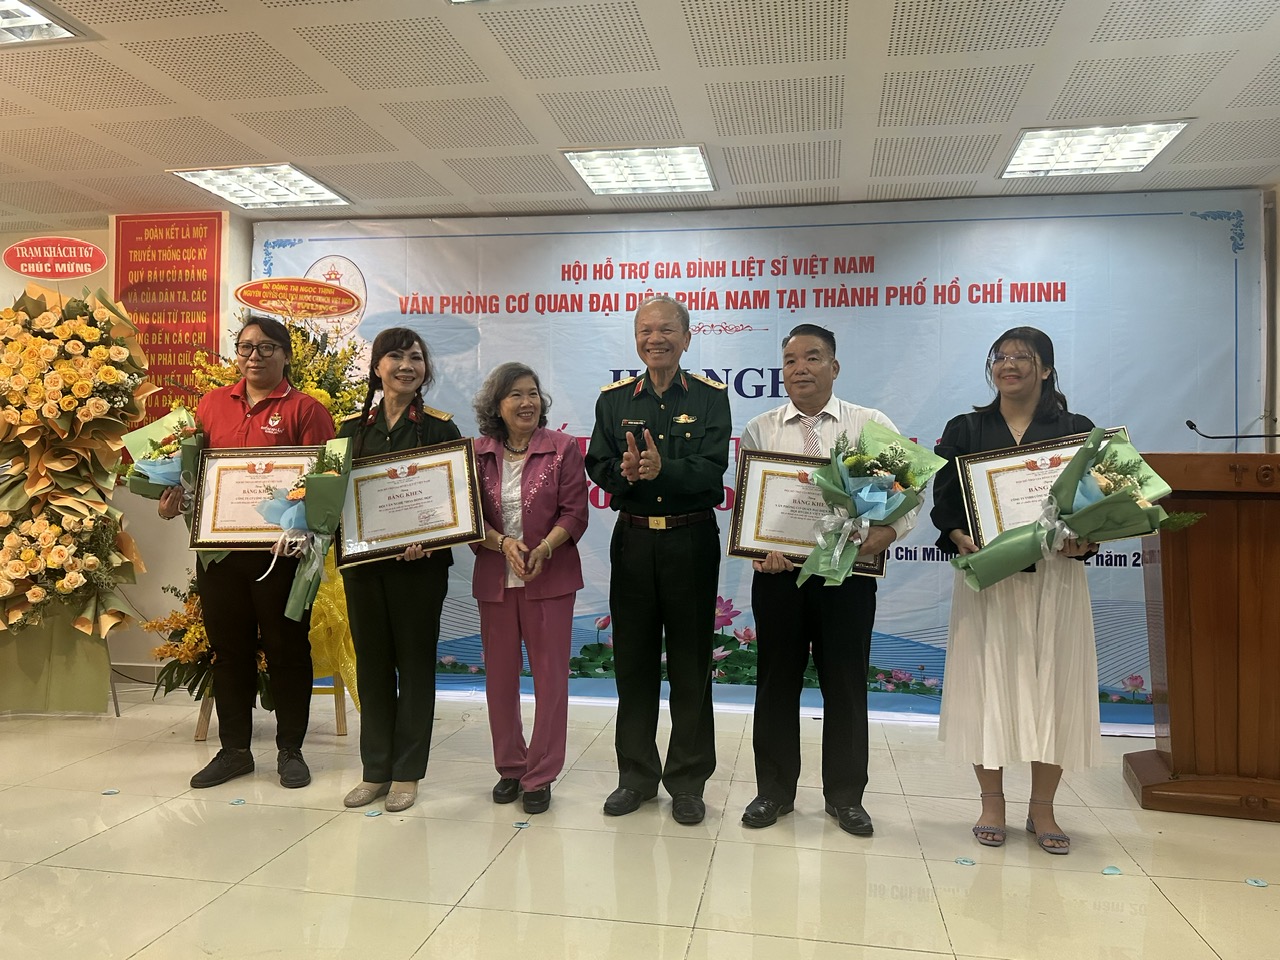 Các cá nhân xuất sắc nhận bằng khen của Hội HTGĐLS Việt Nam